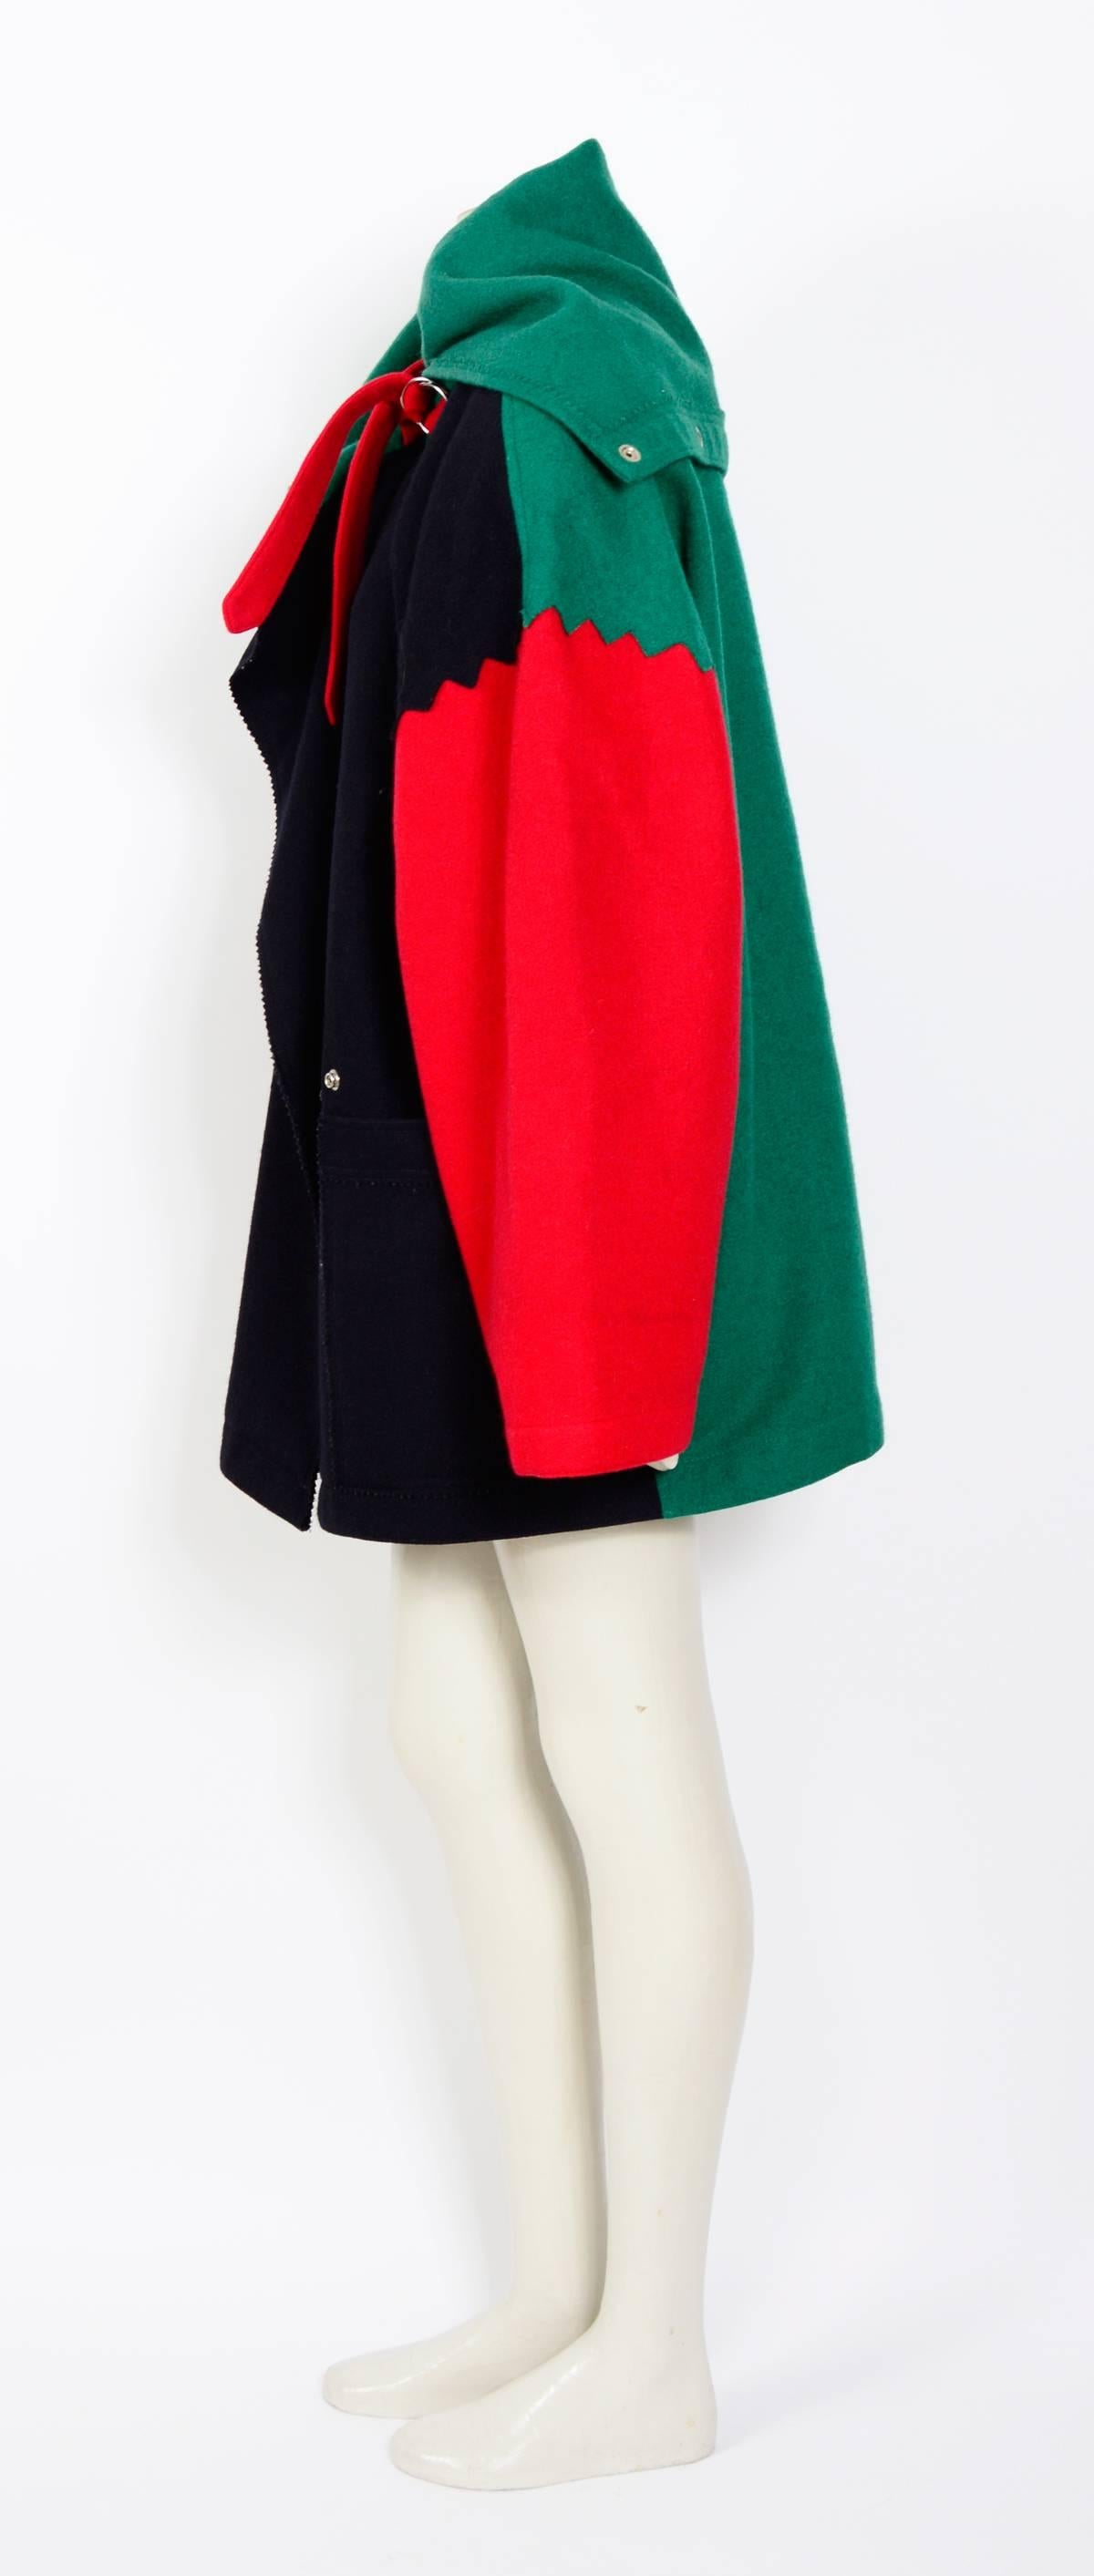 Manteau gigantesque en laine colorée des années 1980 de Jean Charles de Castelbajac. Les épaulettes d'origine datant des années 80 sont toujours dans le manteau, il est fort probable que cette pièce n'ait pas vu la lumière du jour depuis. L'heure du